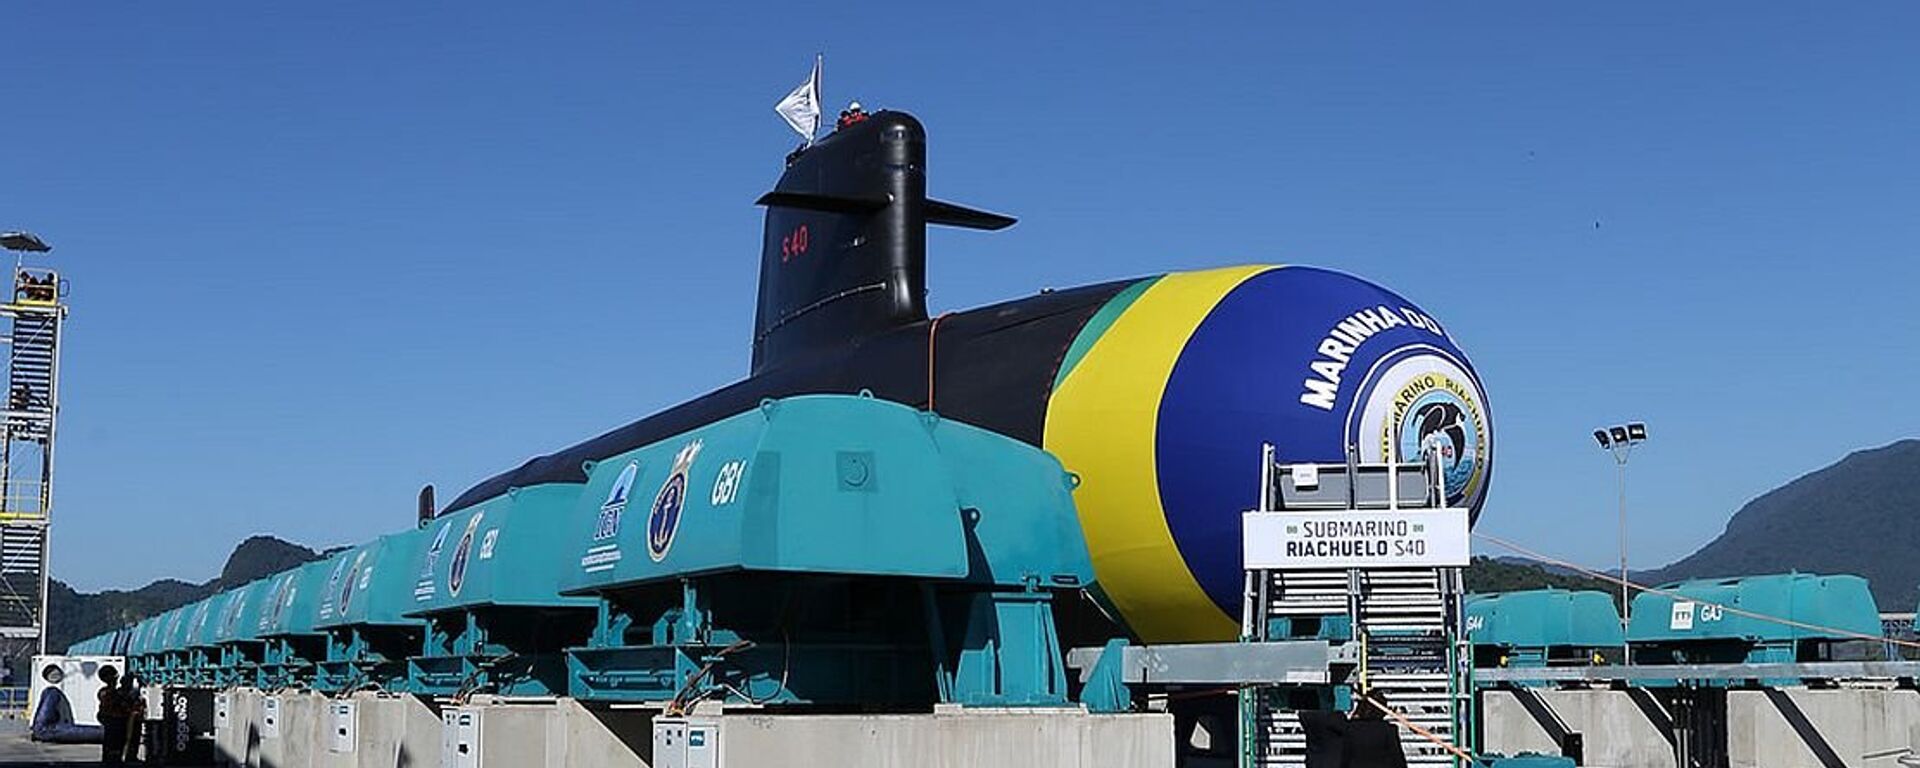 Submarino de classe Scorpène S40 Riachuelo, o primeiro do Prosub (Programa de Desenvolvimento de Submarinos) a ser lançado ao mar, em 2018 - Sputnik Brasil, 1920, 06.06.2022